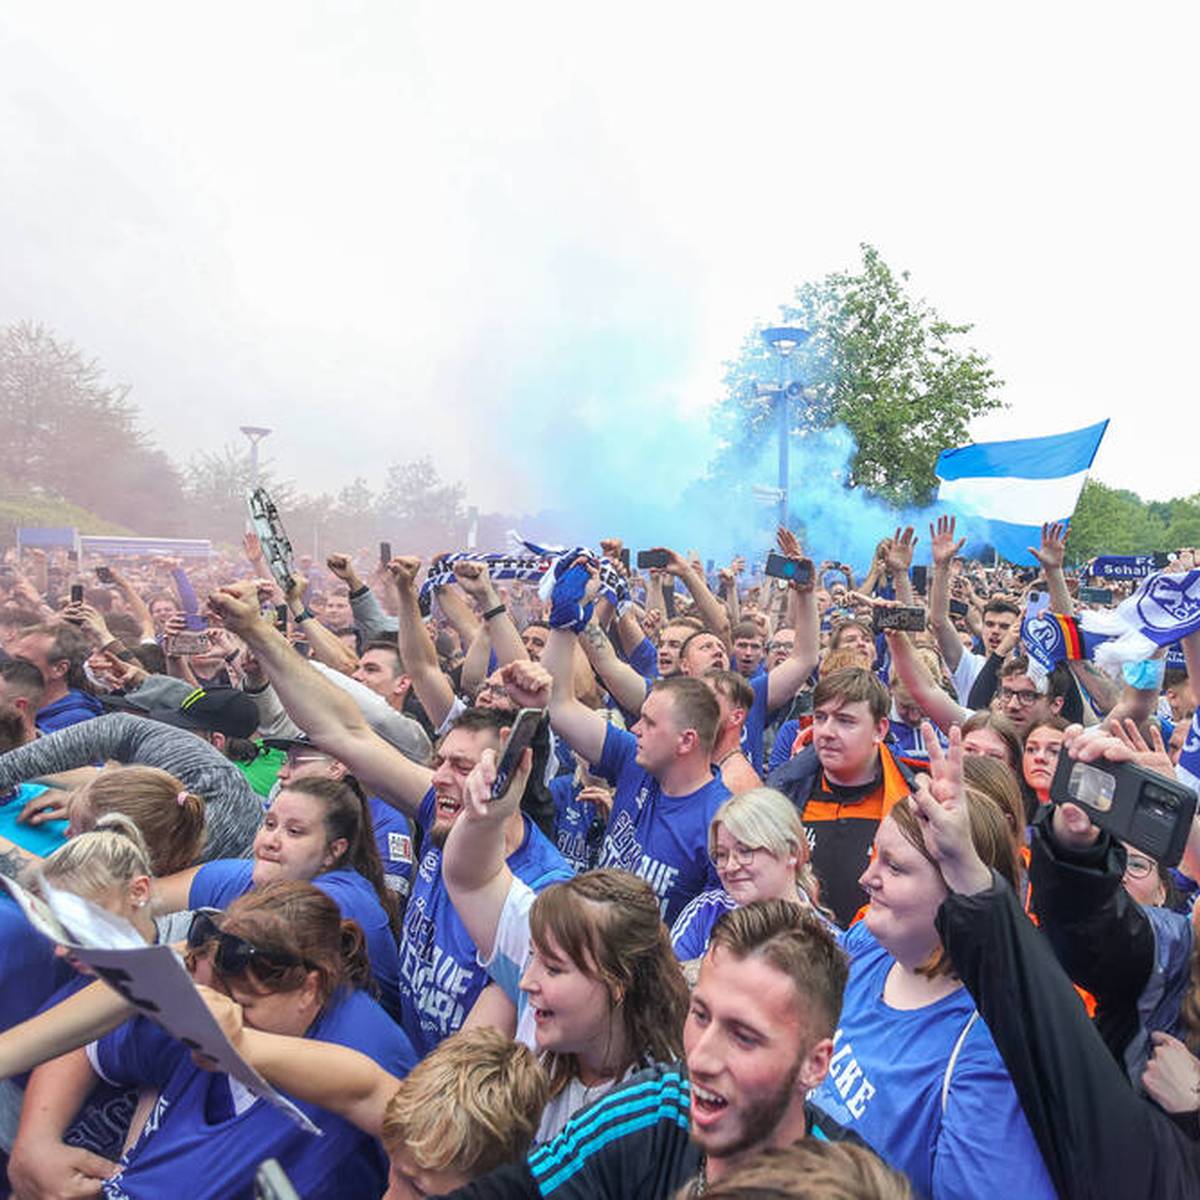 Zehntausende Fans feiern die Aufstiegshelden von Schalke am Montag bei einer Busparade. Alles leuchtet in Blau und Weiß. SPORT1 ist LIVE dabei.